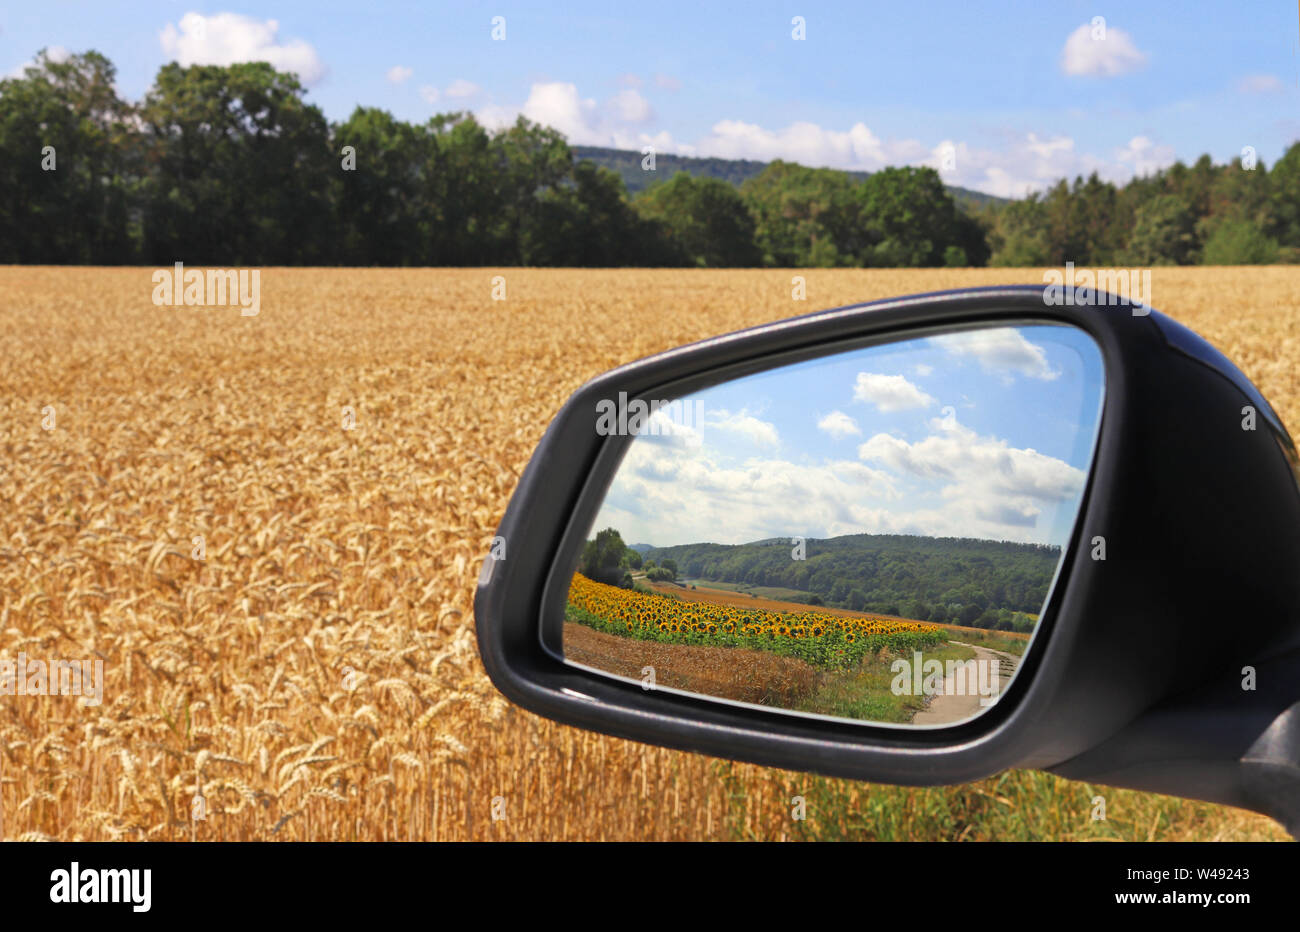 Vue de la fenêtre latérale d'une voiture à un champ de grain de couleur or et à l'arrière-vue mirrow montrant un paysage magnifique avec des tournesols Banque D'Images